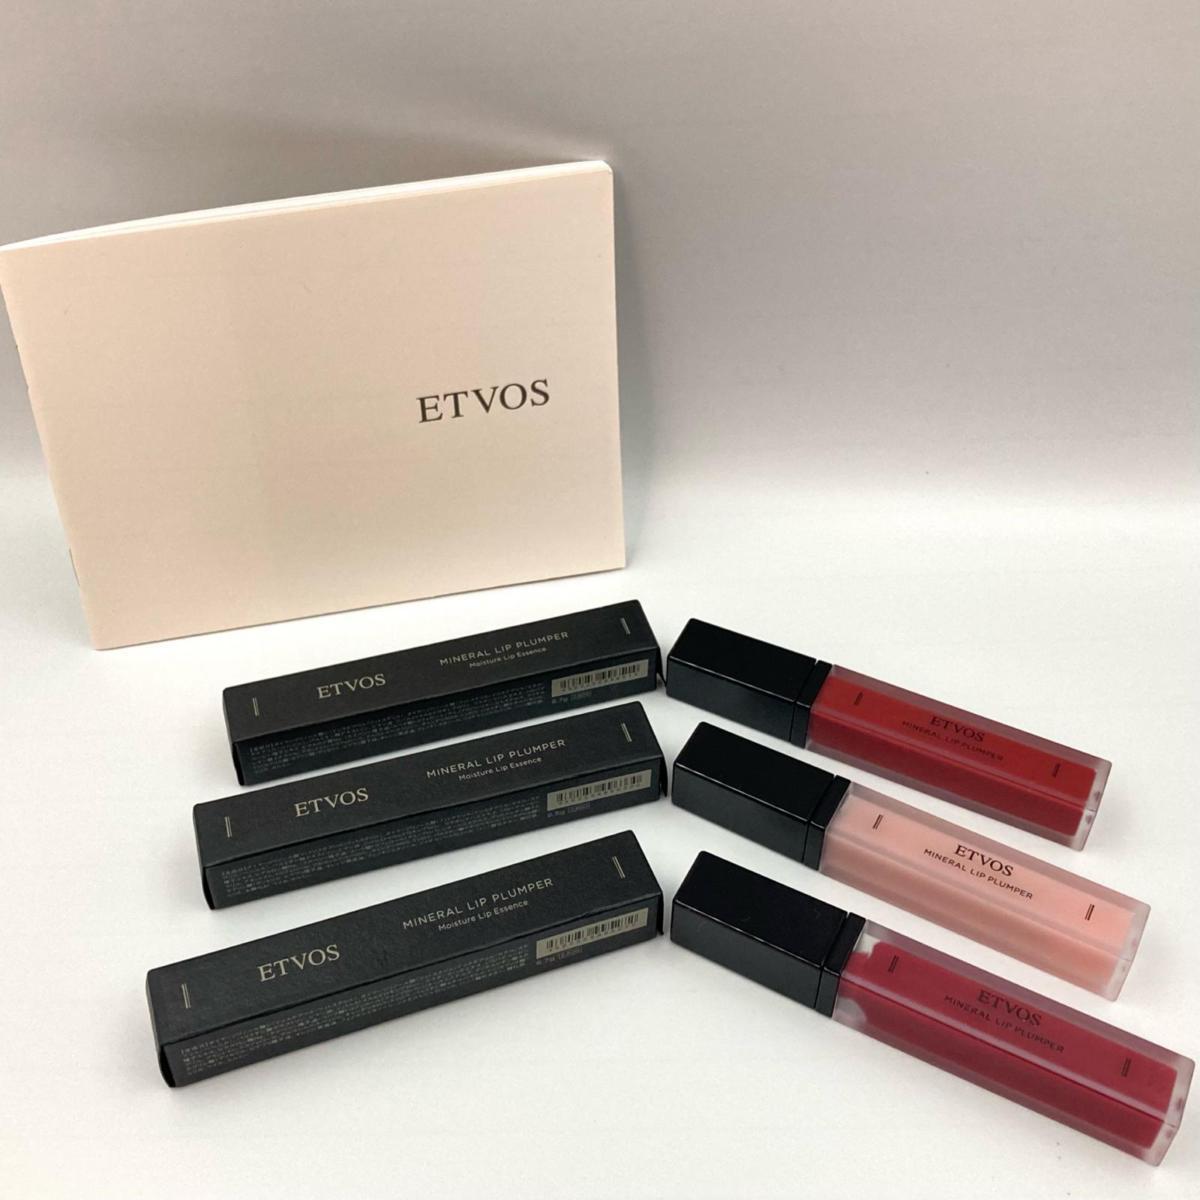 ETVOS エトヴォス ミネラルリッププランパー レッド ピンク 化粧品